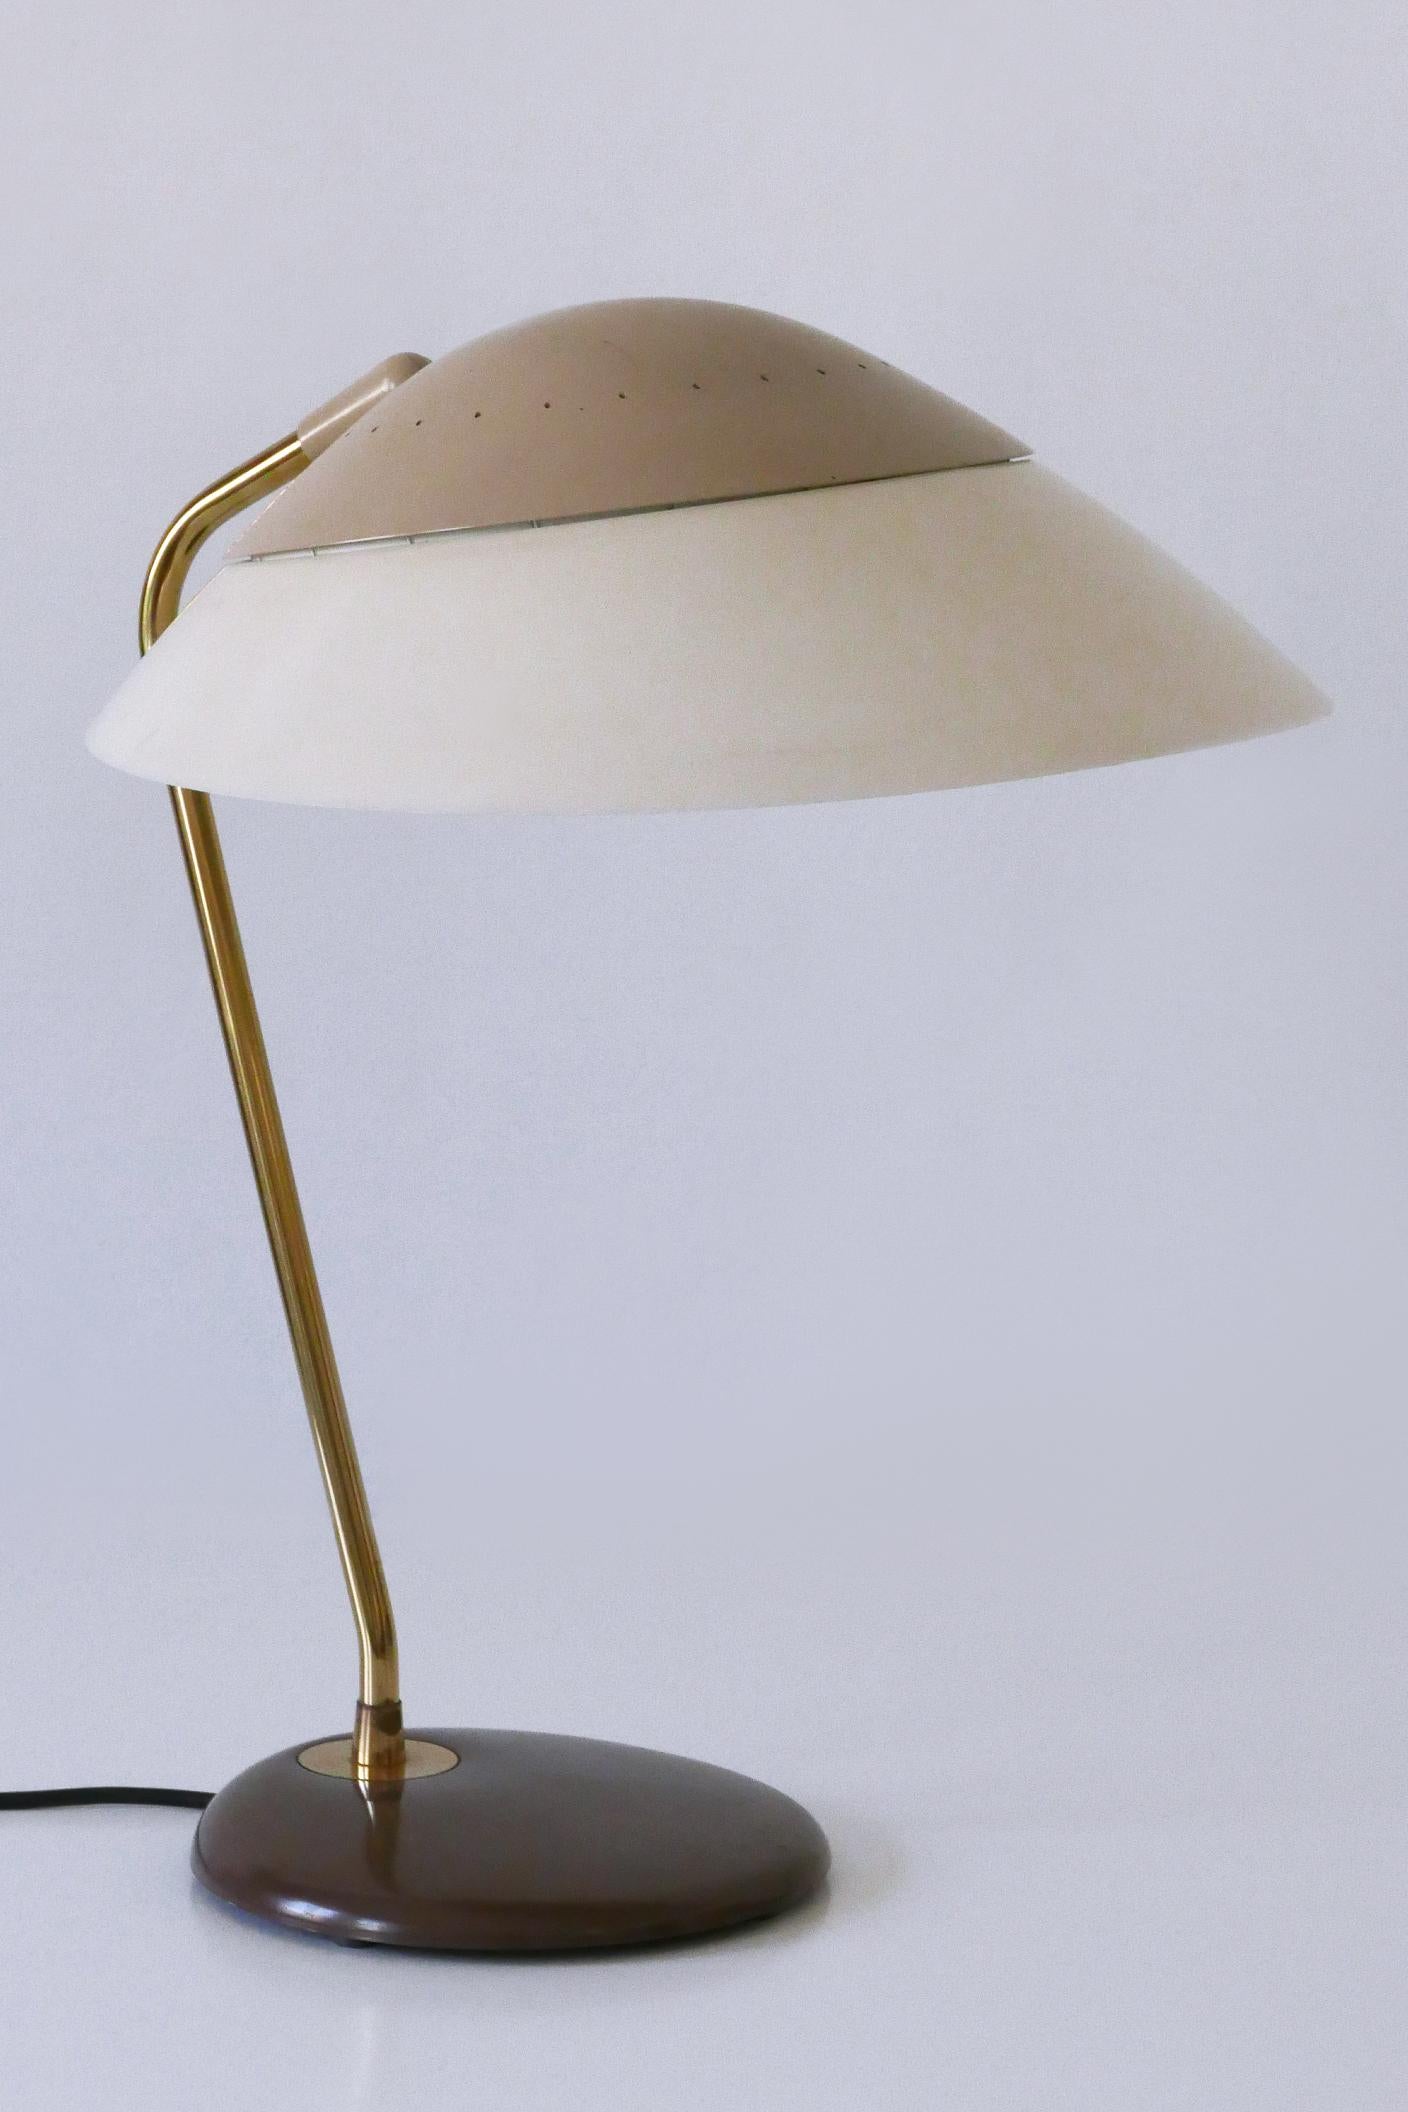 Elegant Table Lamp or Desk Light by Gerald Thurston for Lightolier USA 1950s For Sale 7